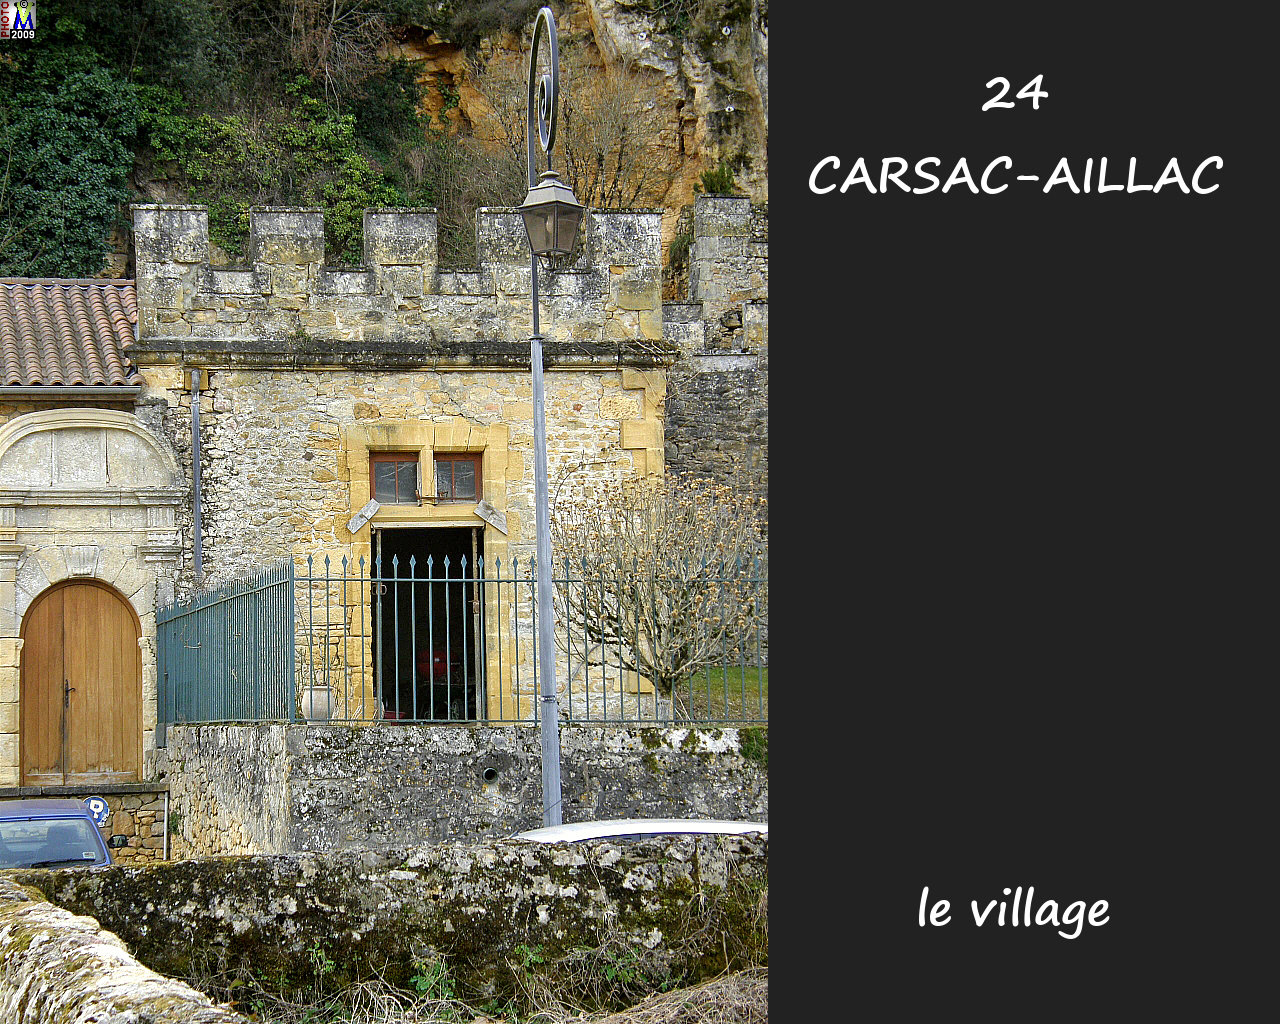 24CARSAC-AILLAC_village_102.jpg